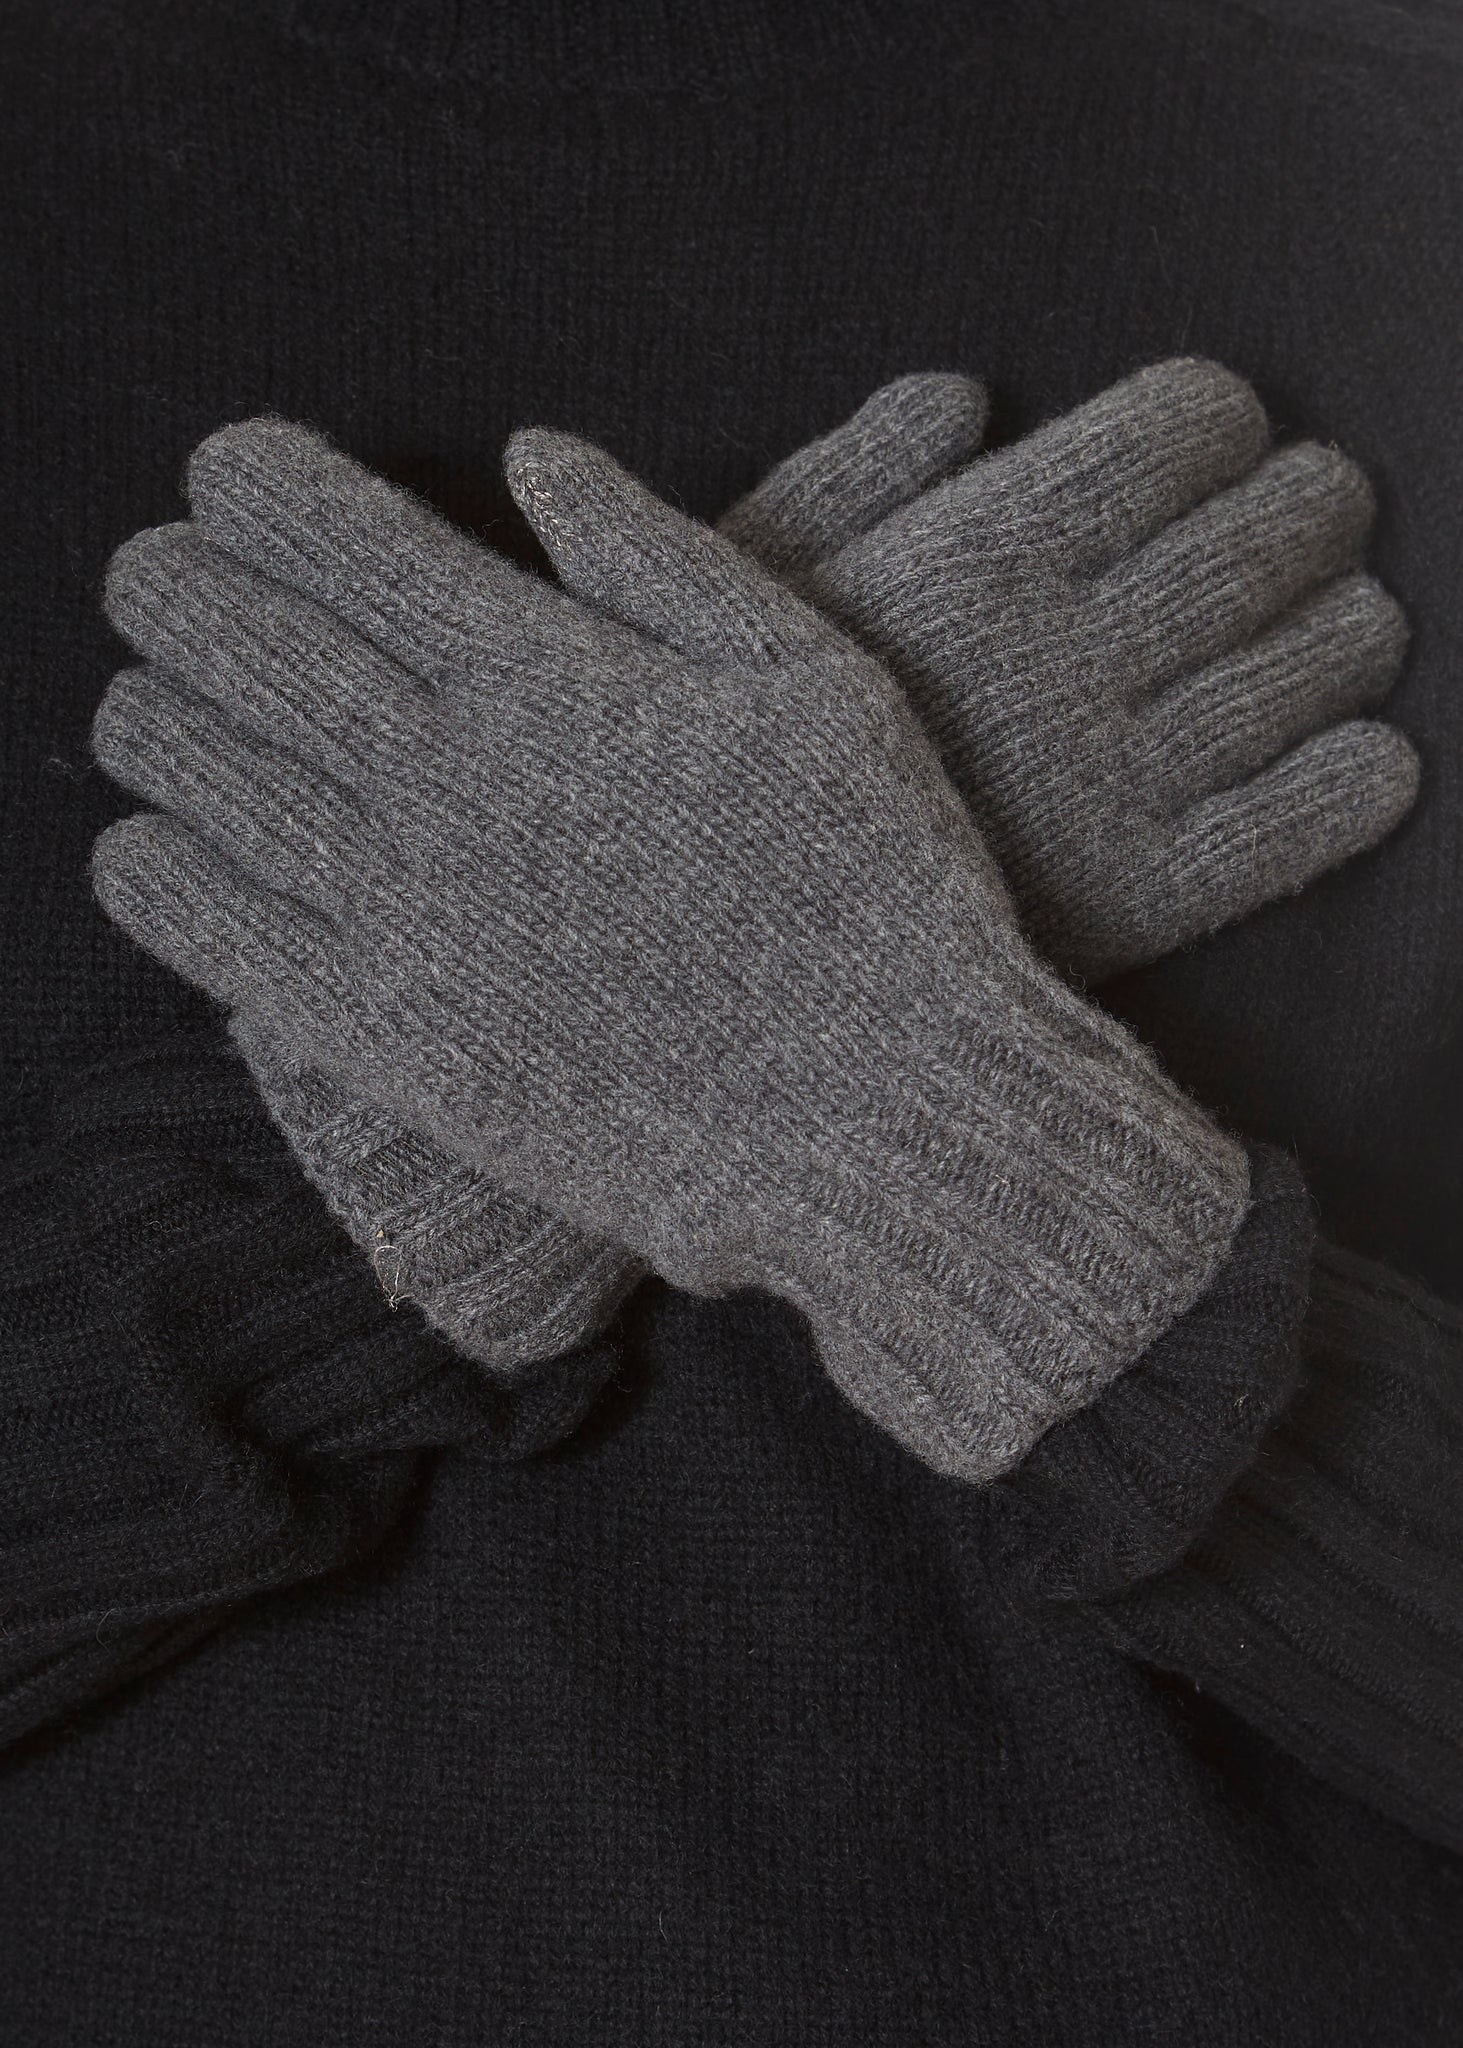 Santacana Dark Grey Gloves 'Cashmere Blend' - Jessimara